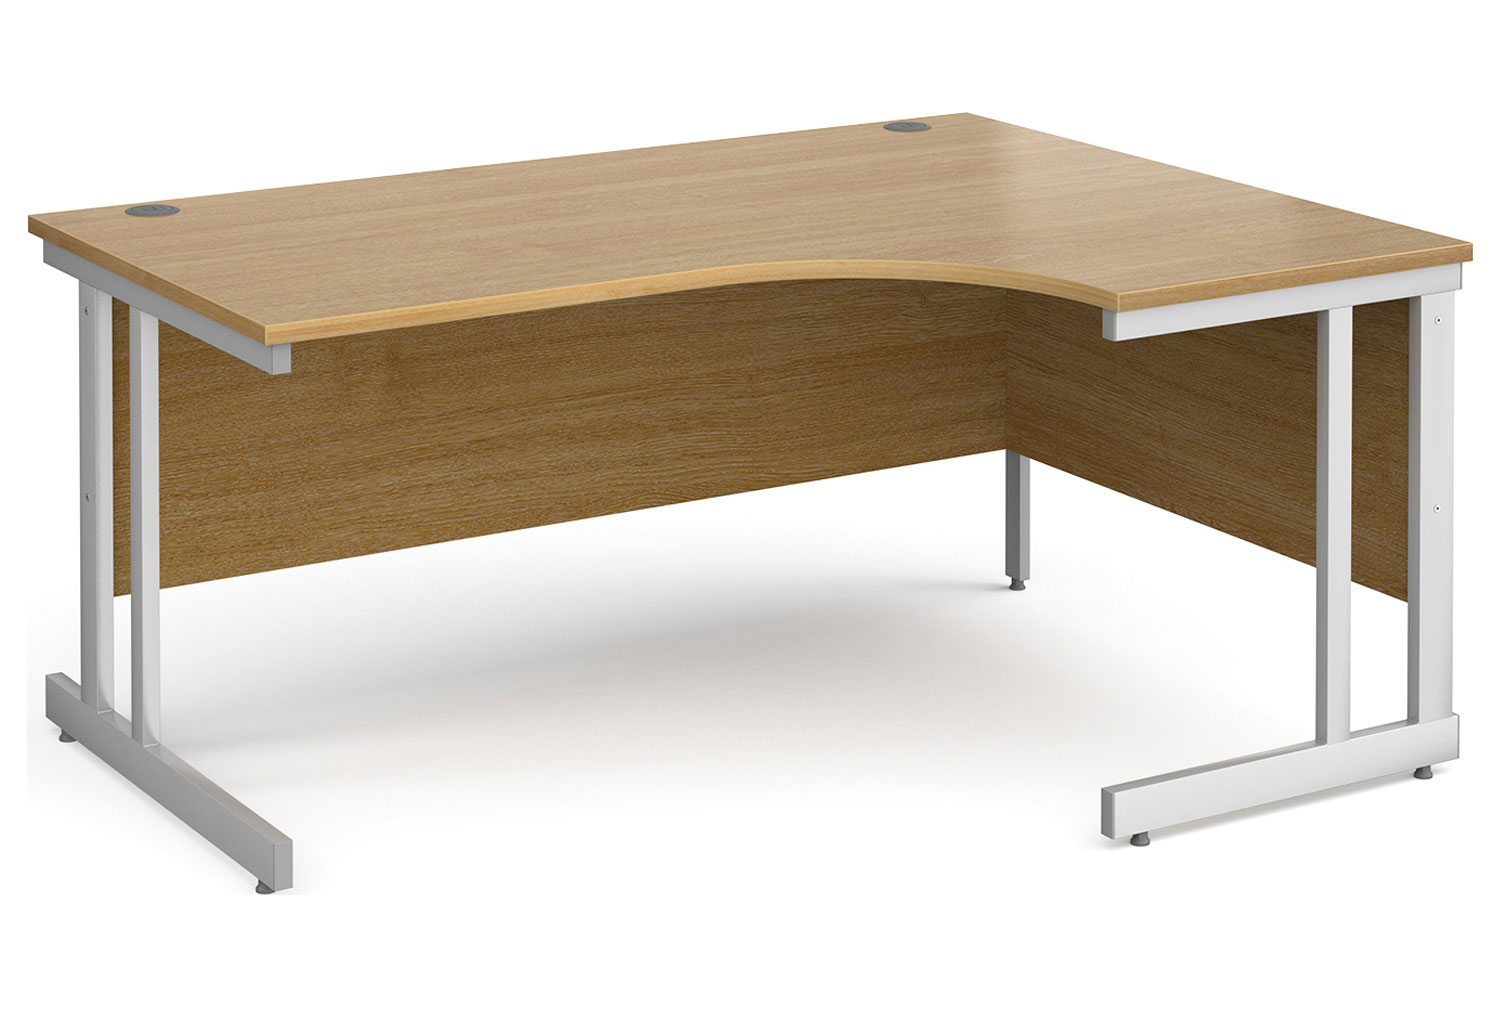 All Oak Double C-Leg Ergonomic Right Hand Office Desk, 160wx120/80dx73h (cm)